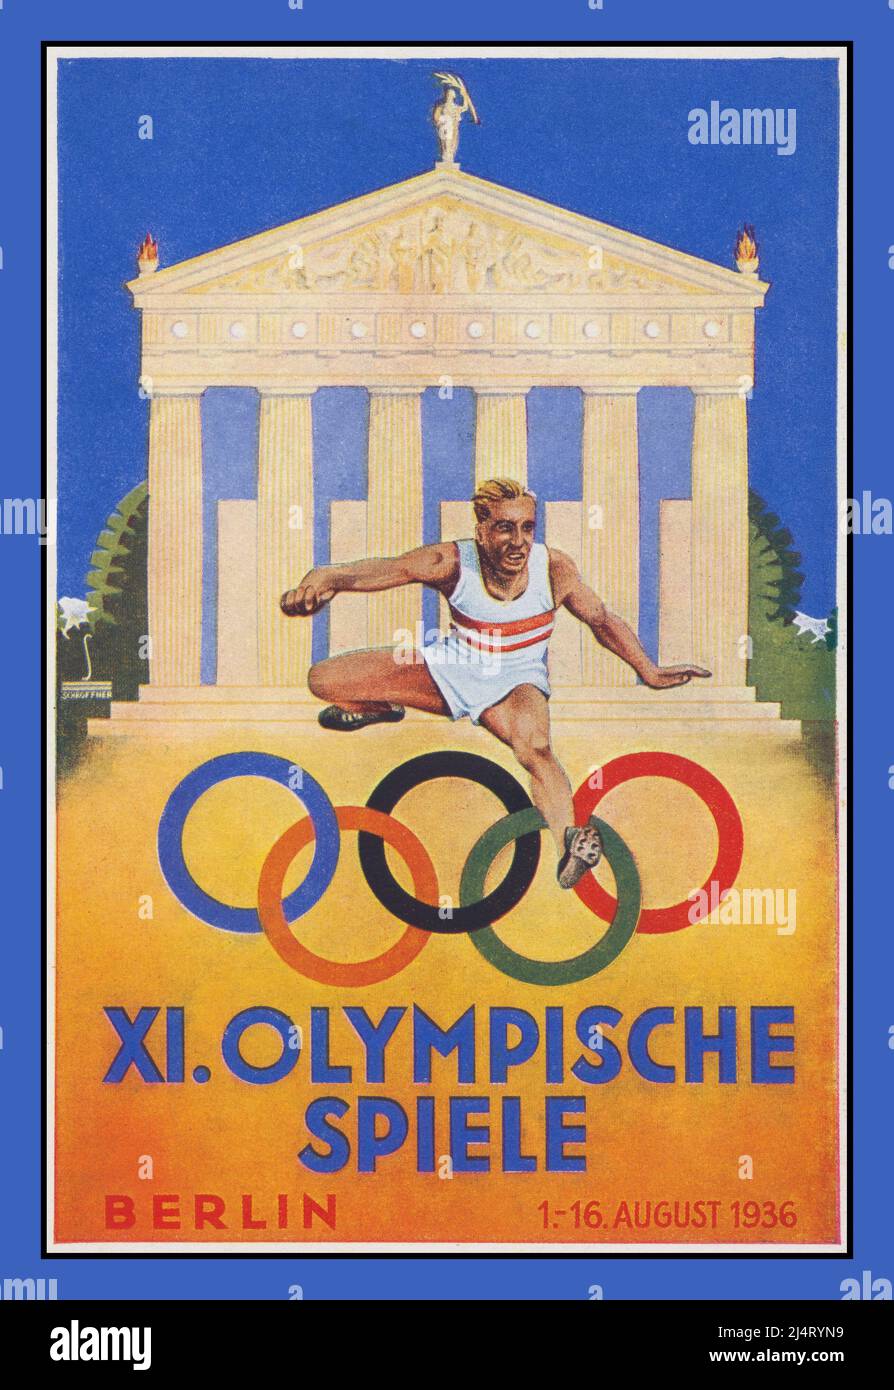 1936 carta poster delle Olimpiadi della Germania nazista, con il biondo maschio aryan che salta sui simboli olimpici Berlino nazista Germania 1st - 16th agosto 1936 X1. OLYMPISCHE SPIELE Berlino Germania Foto Stock